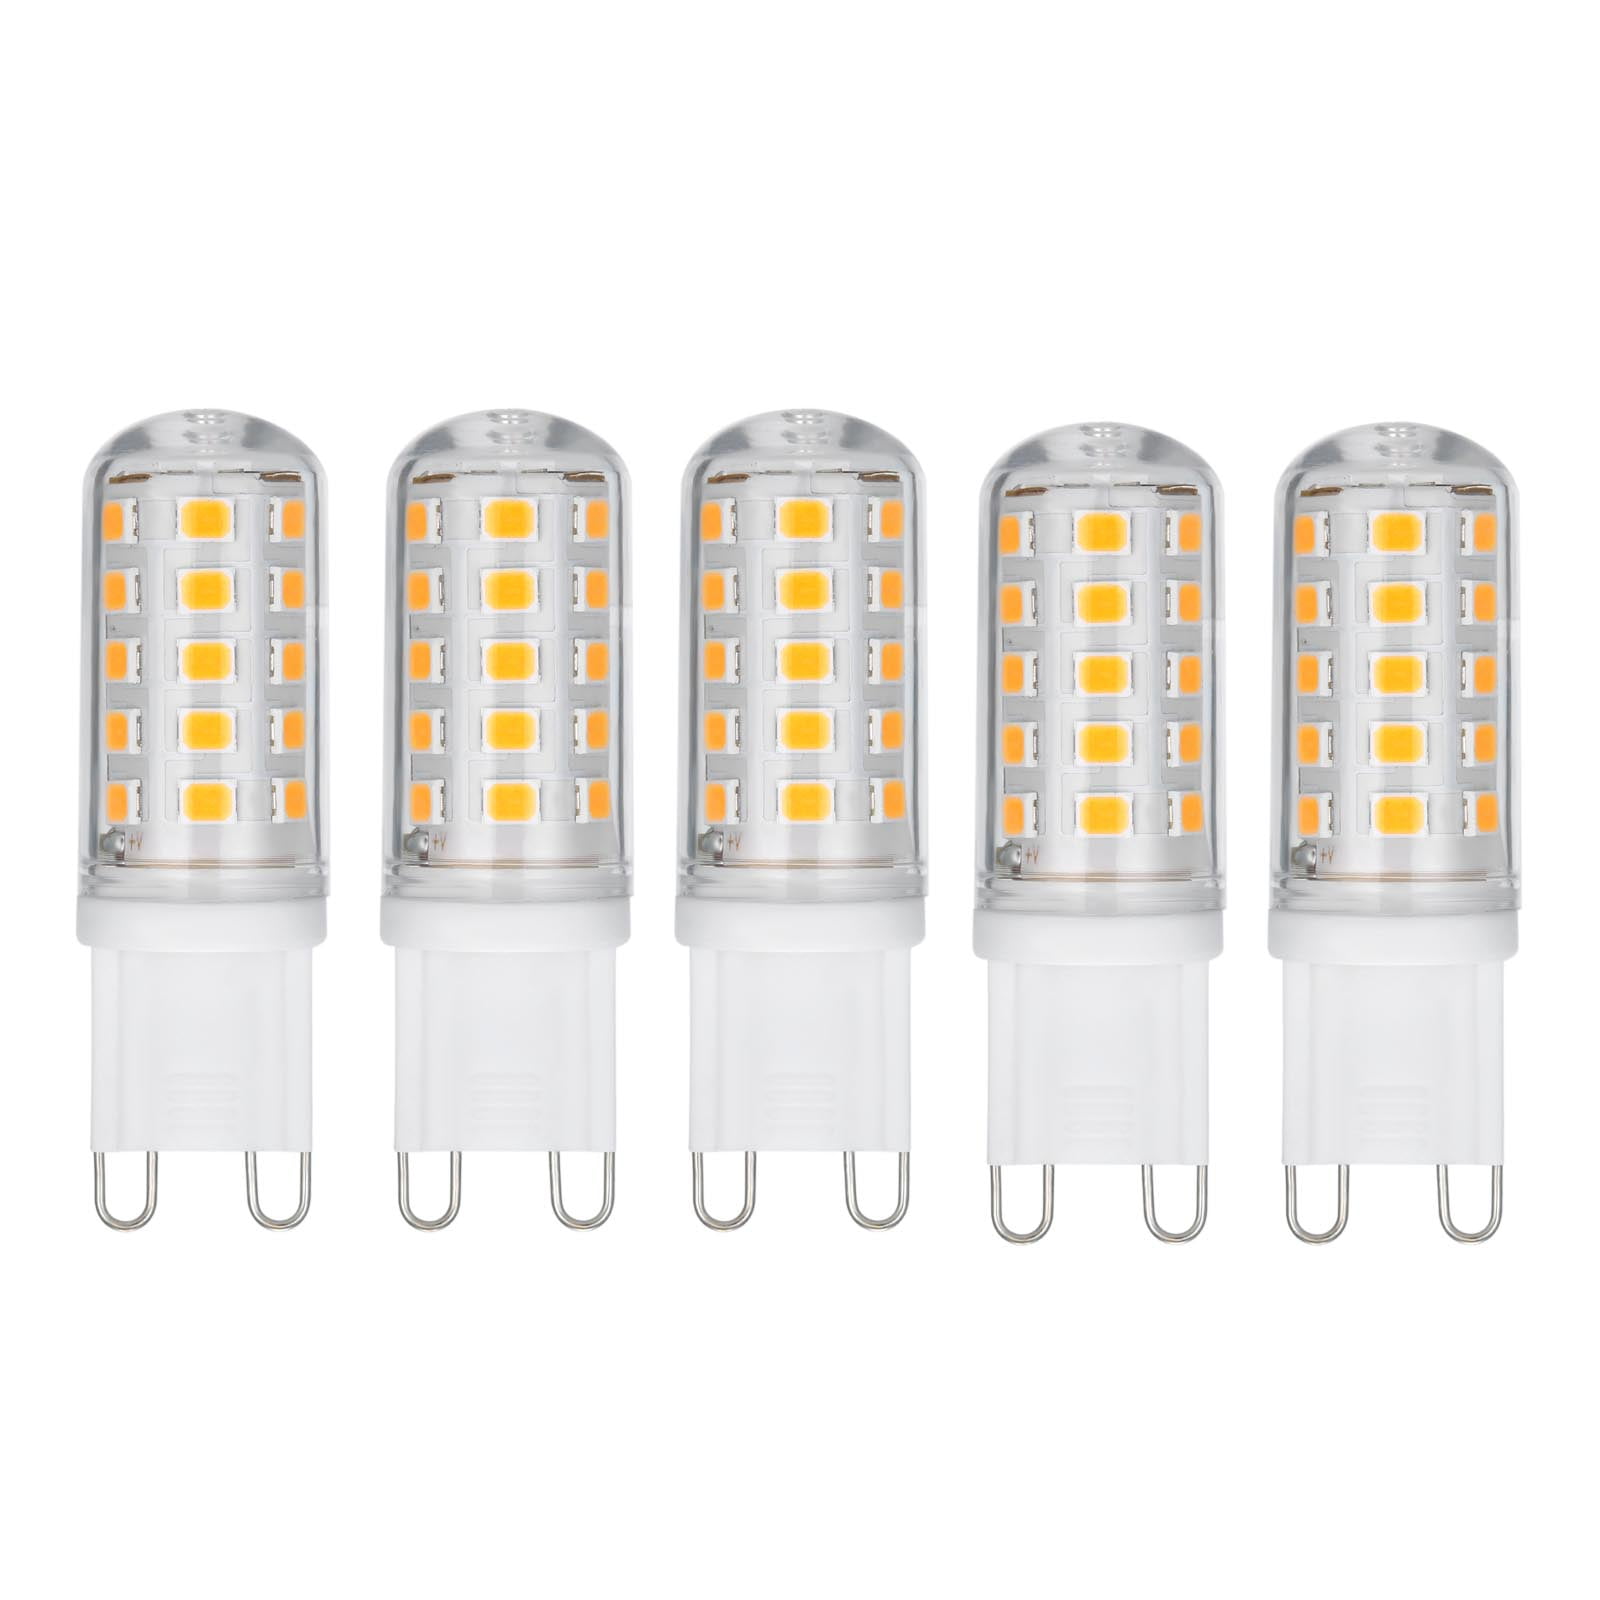 G9 LED Halogen Capsule Light Bulbs Lamp 40W 230V Warm White 3000k Lighting Yc 